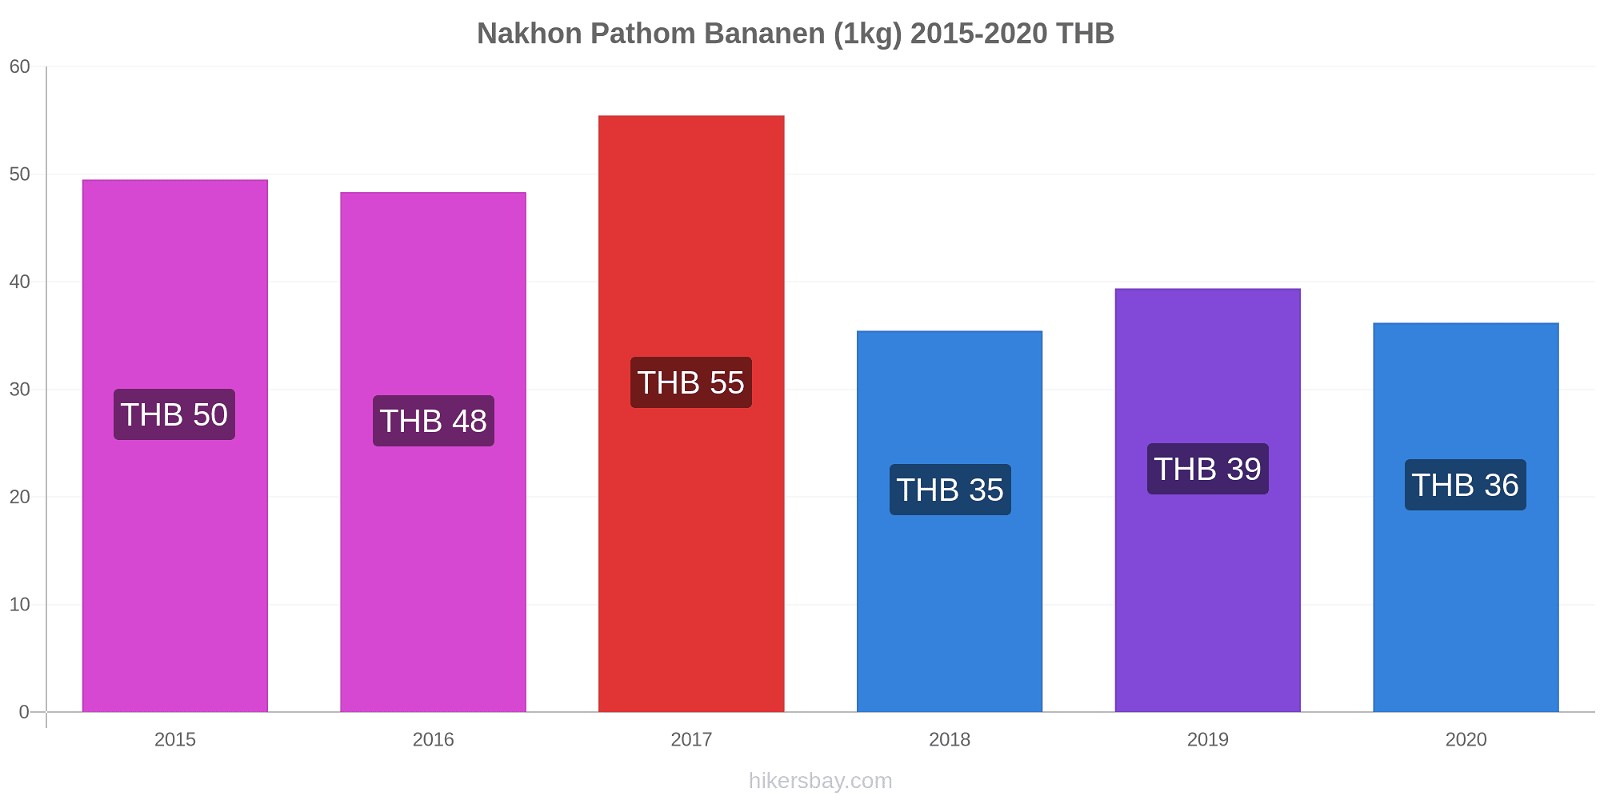 Nakhon Pathom Preisänderungen Banane (1kg) hikersbay.com